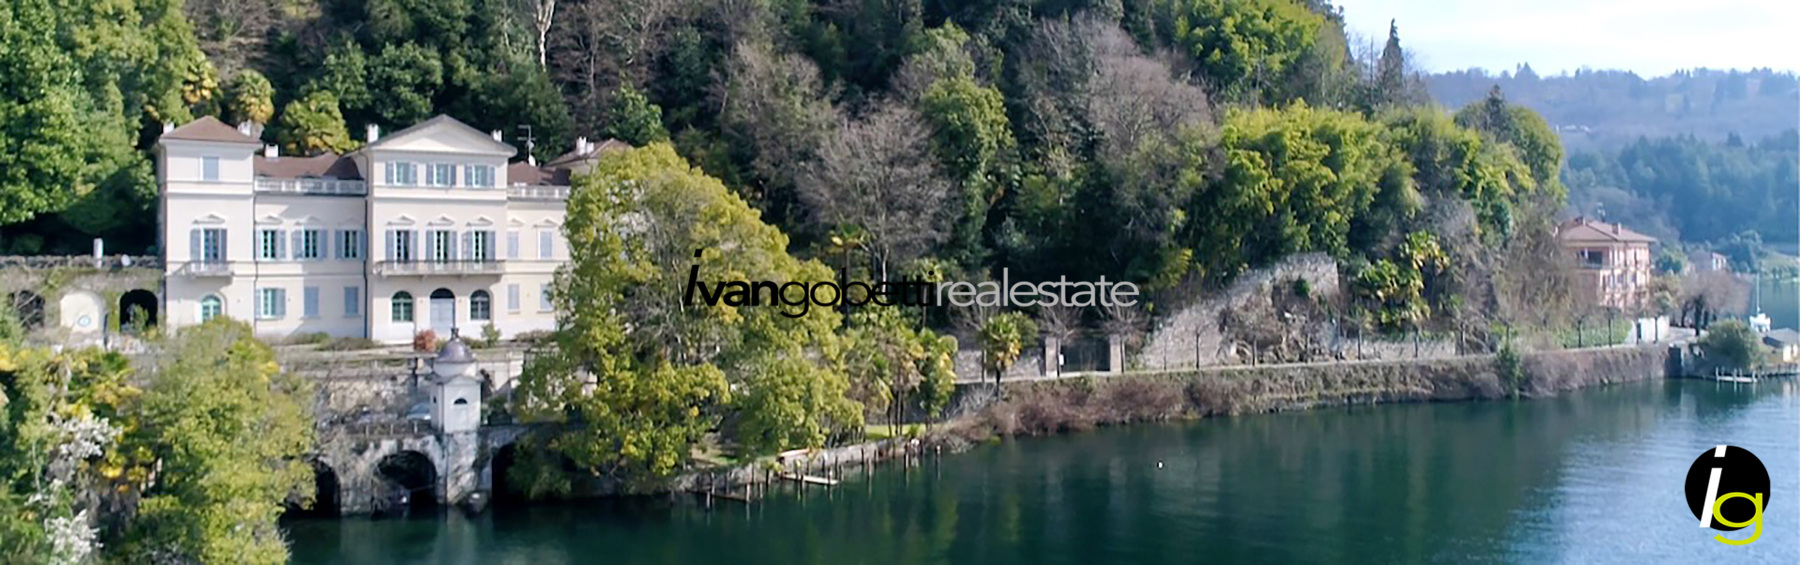 Ortasee in Orta San Giulio in der prächtigen Villa Natta zum Verkauf Penthouse mit Zugang zum See<br/><span>Produktcode: 200324